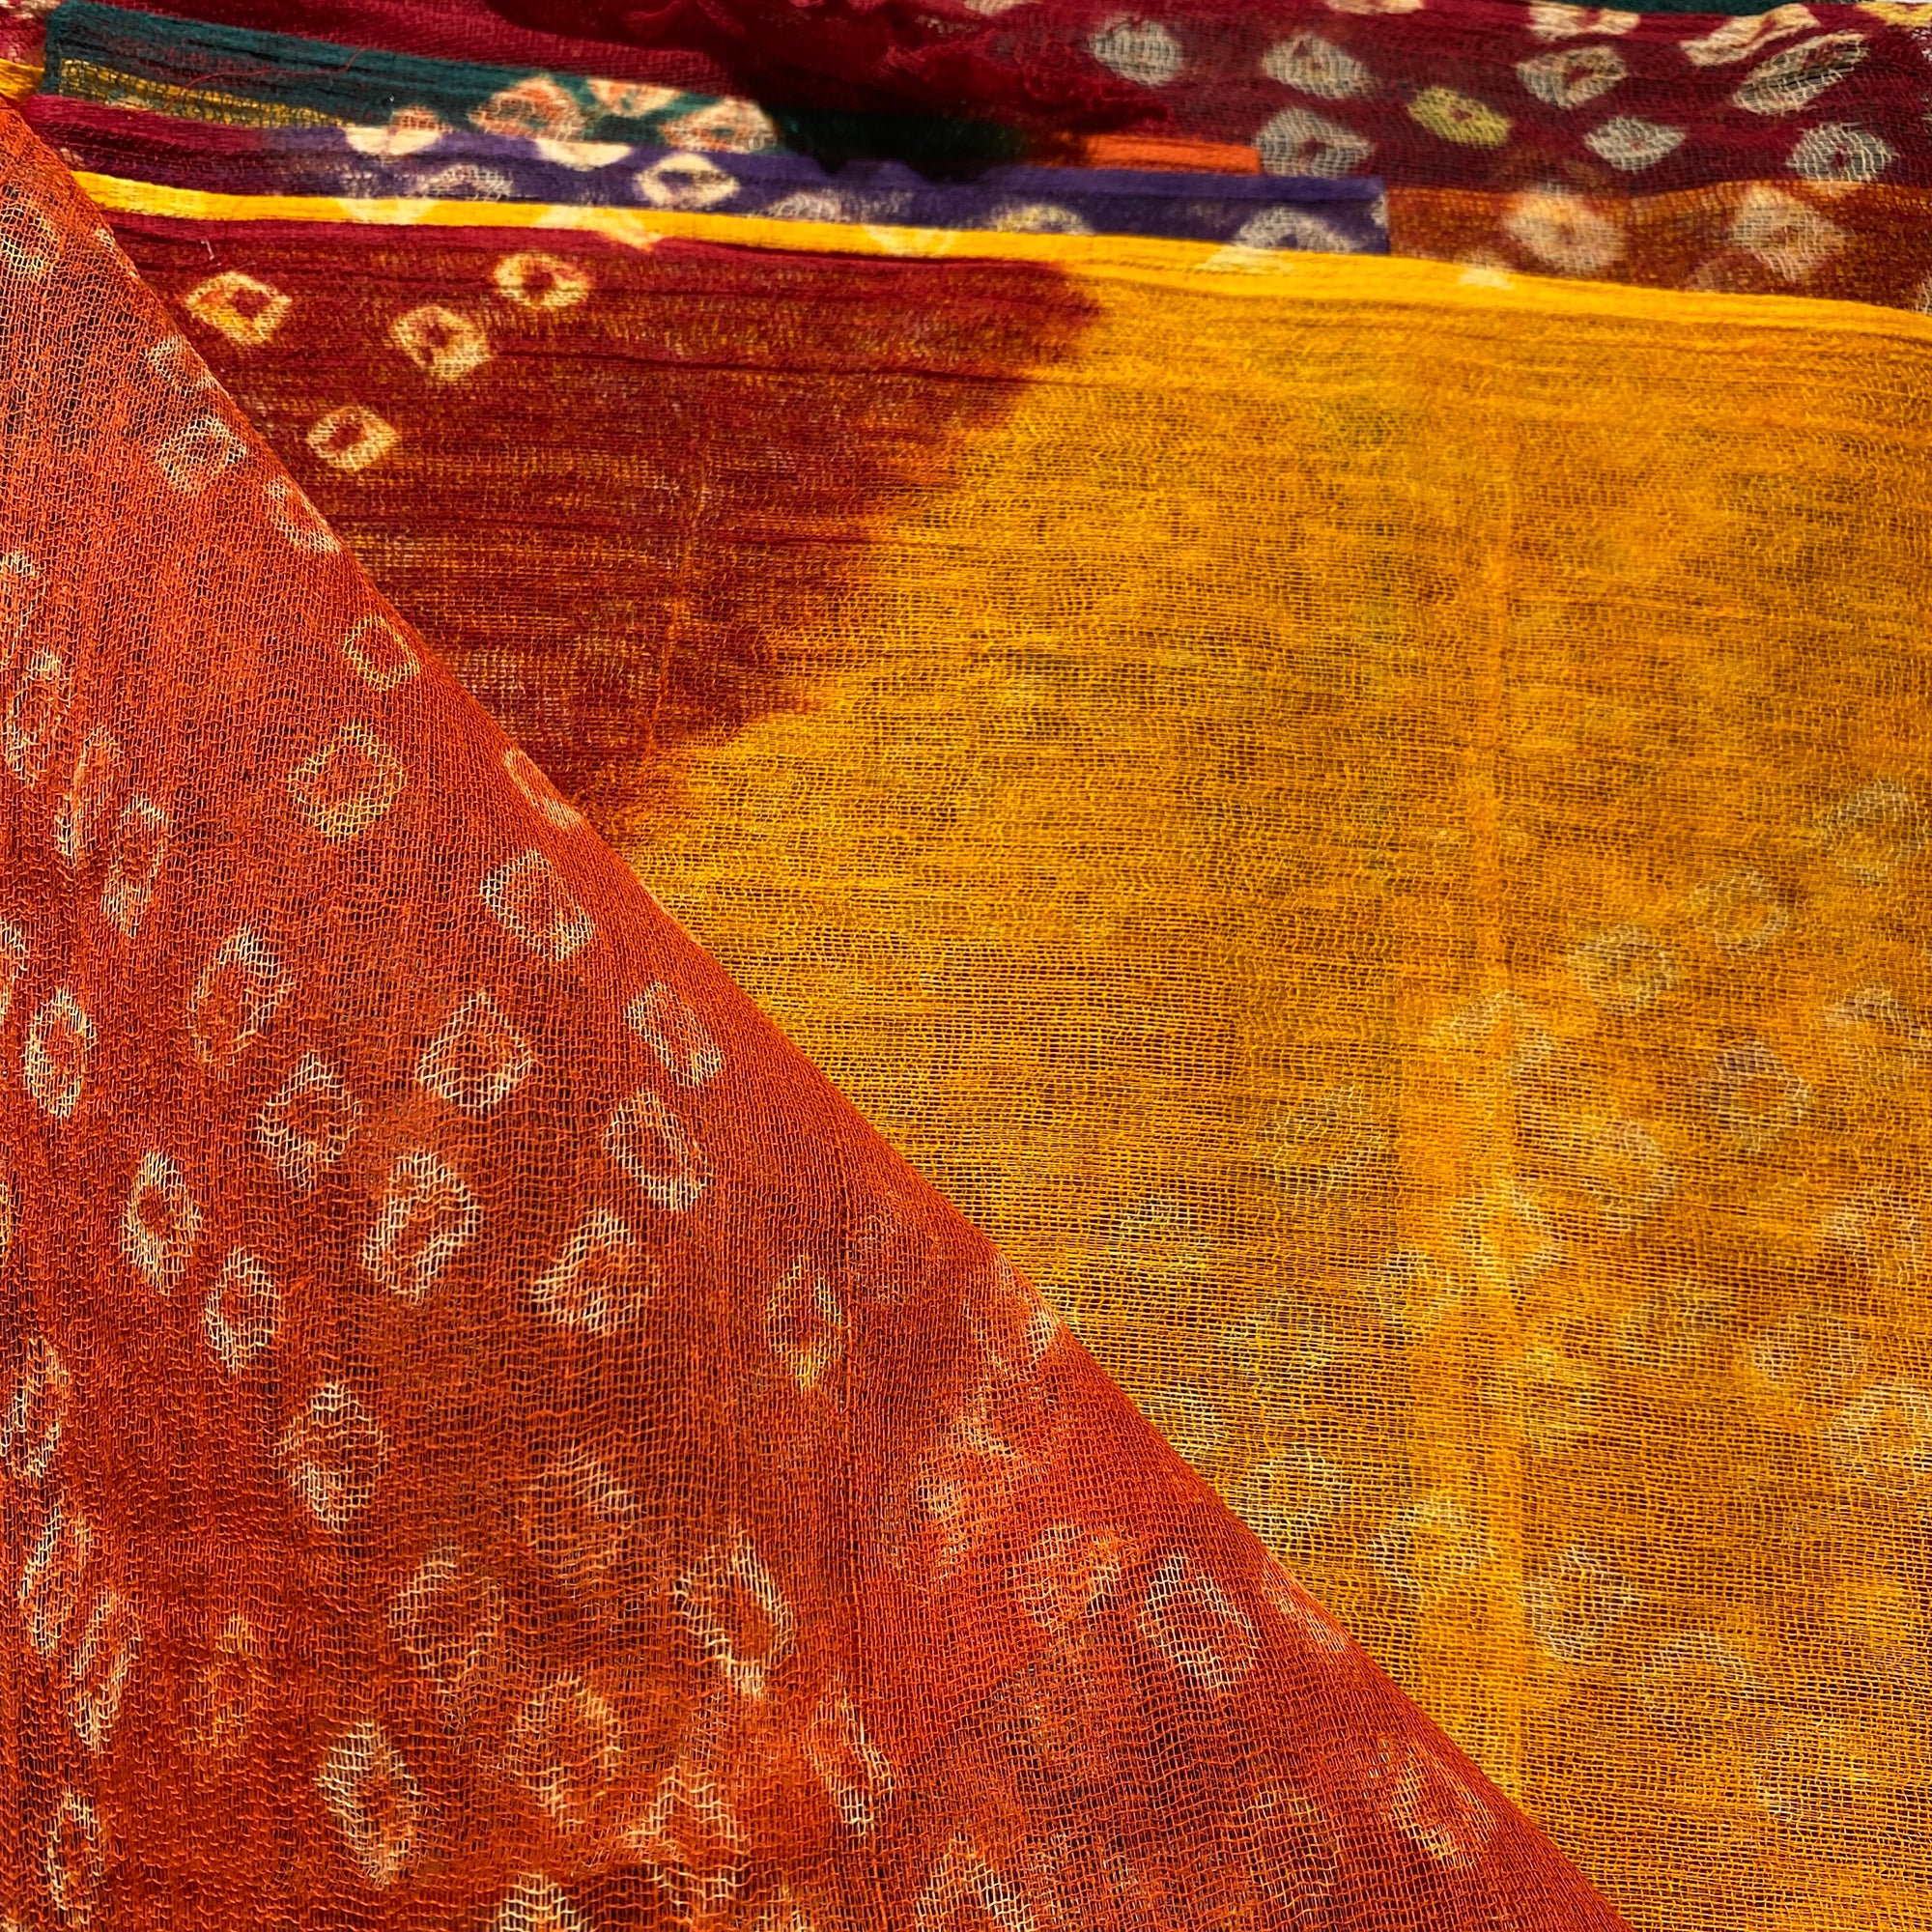 Rajasthani Safa Fabrics - Vintage India NYC